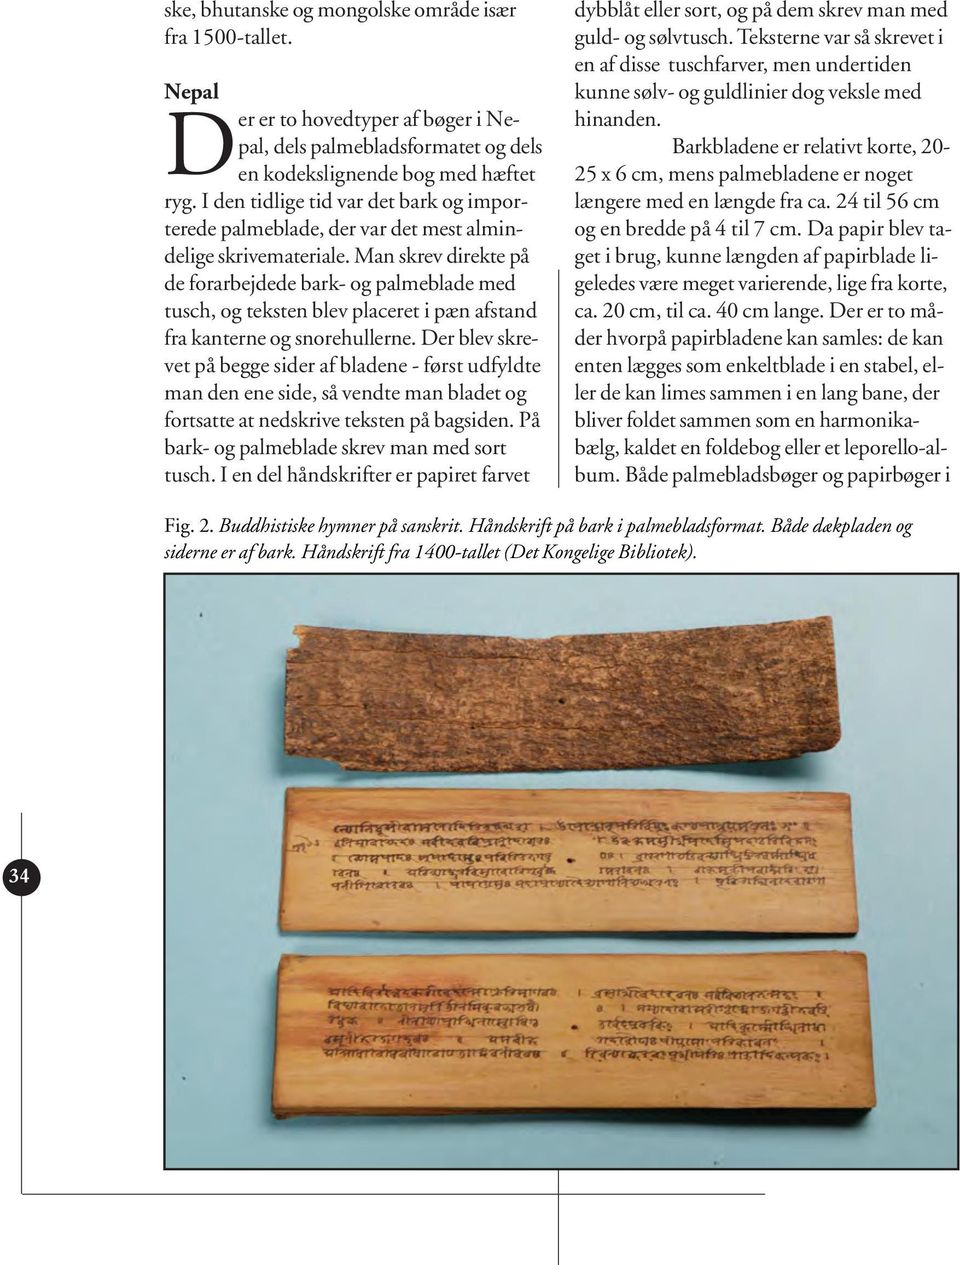 Man skrev direkte på de forarbejdede bark- og palmeblade med tusch, og teksten blev placeret i pæn afstand fra kanterne og snorehullerne.